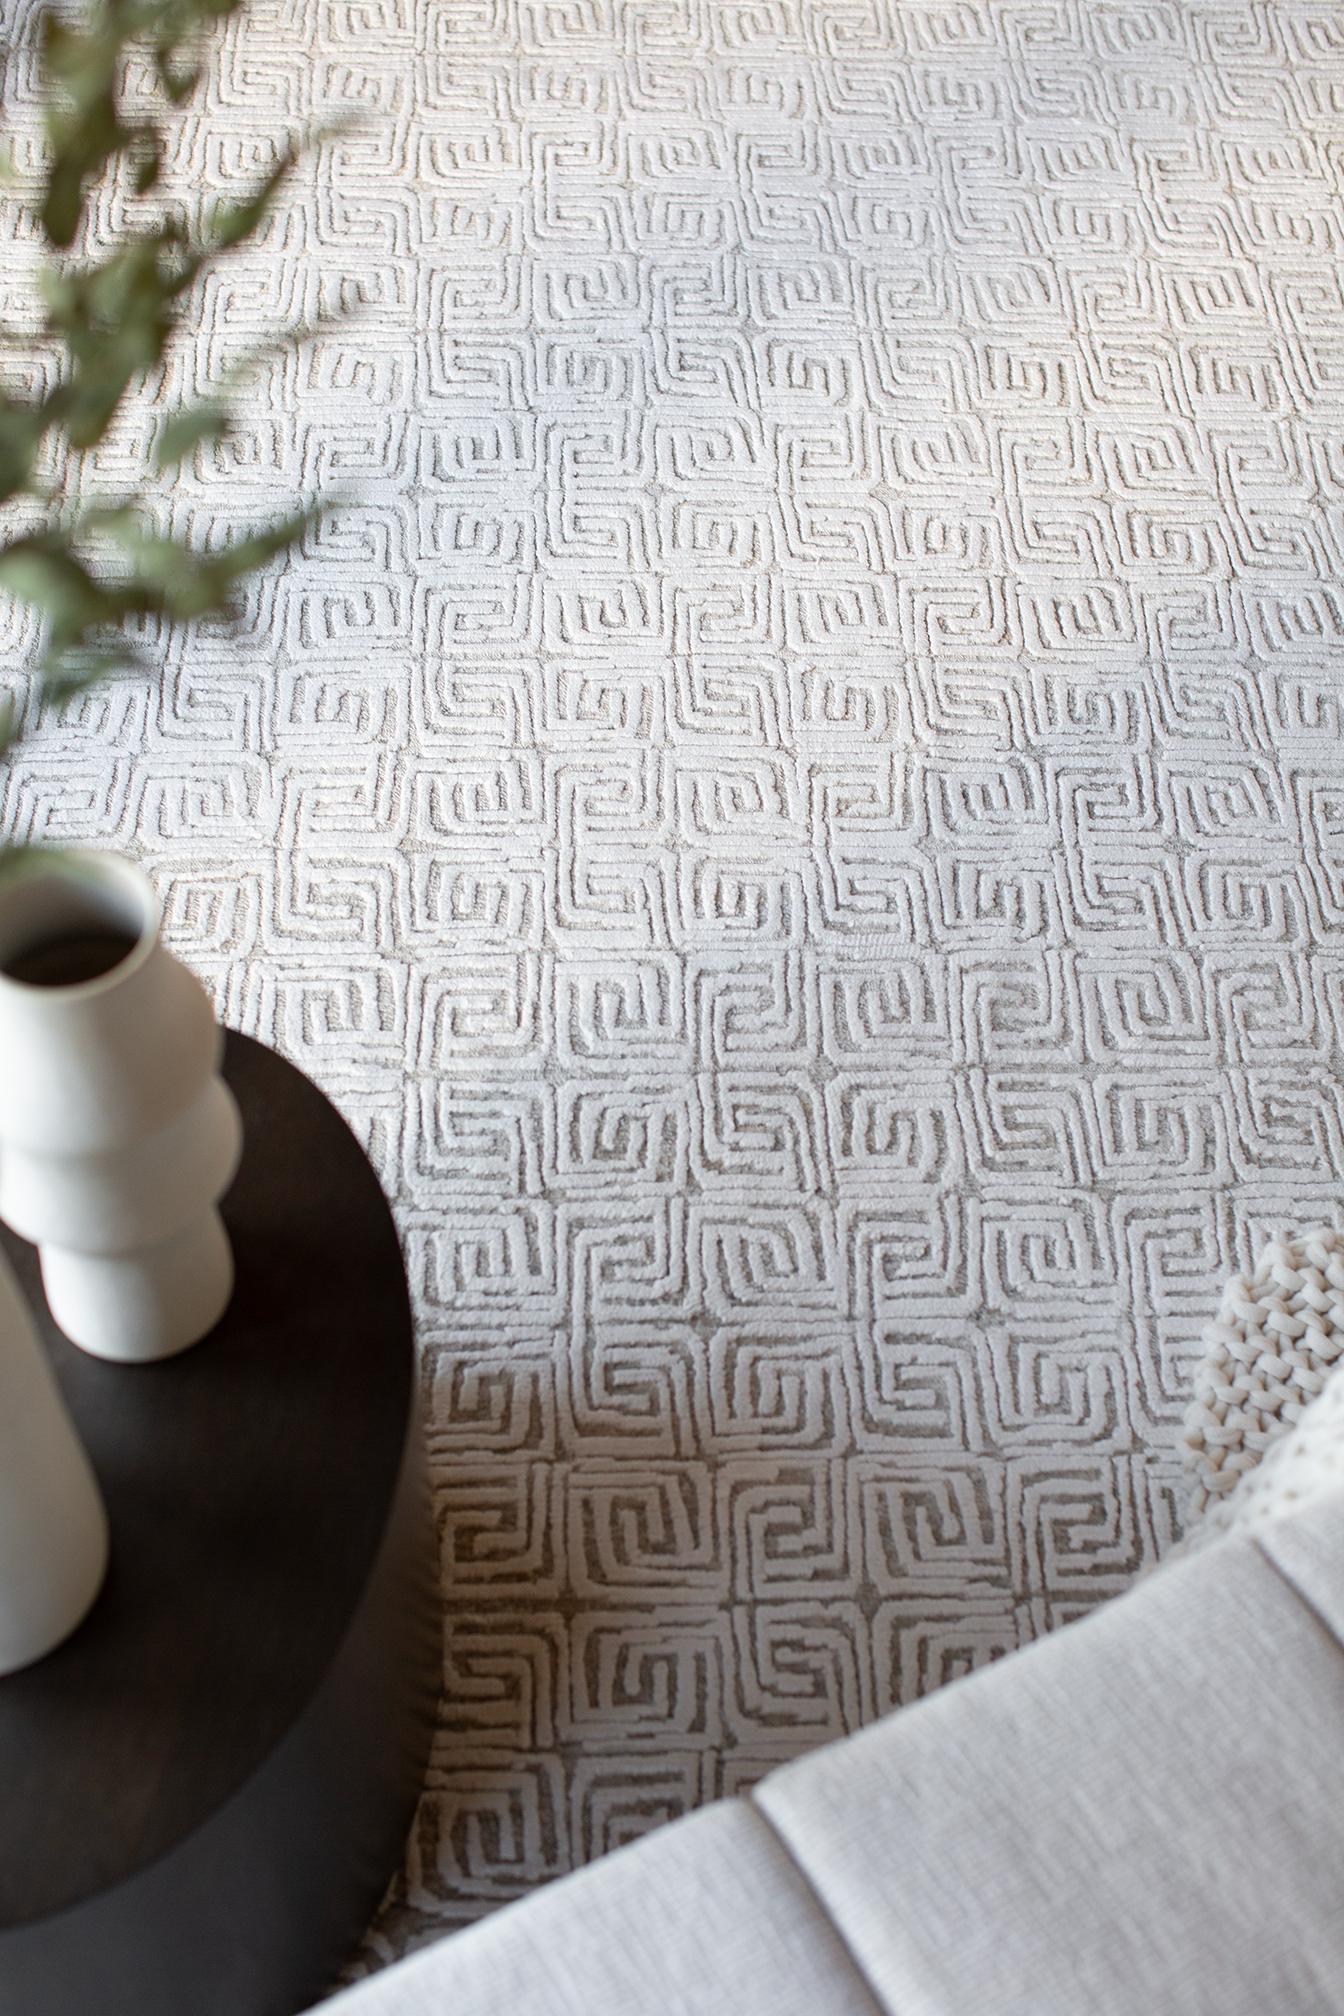 Un motif de labyrinthe à petite échelle combinant une texture décontractée et des poils fins.
Un ivoire clair et net, parsemé de tons gris taupe.

Numéro de tapis
30772
Taille
8' 11